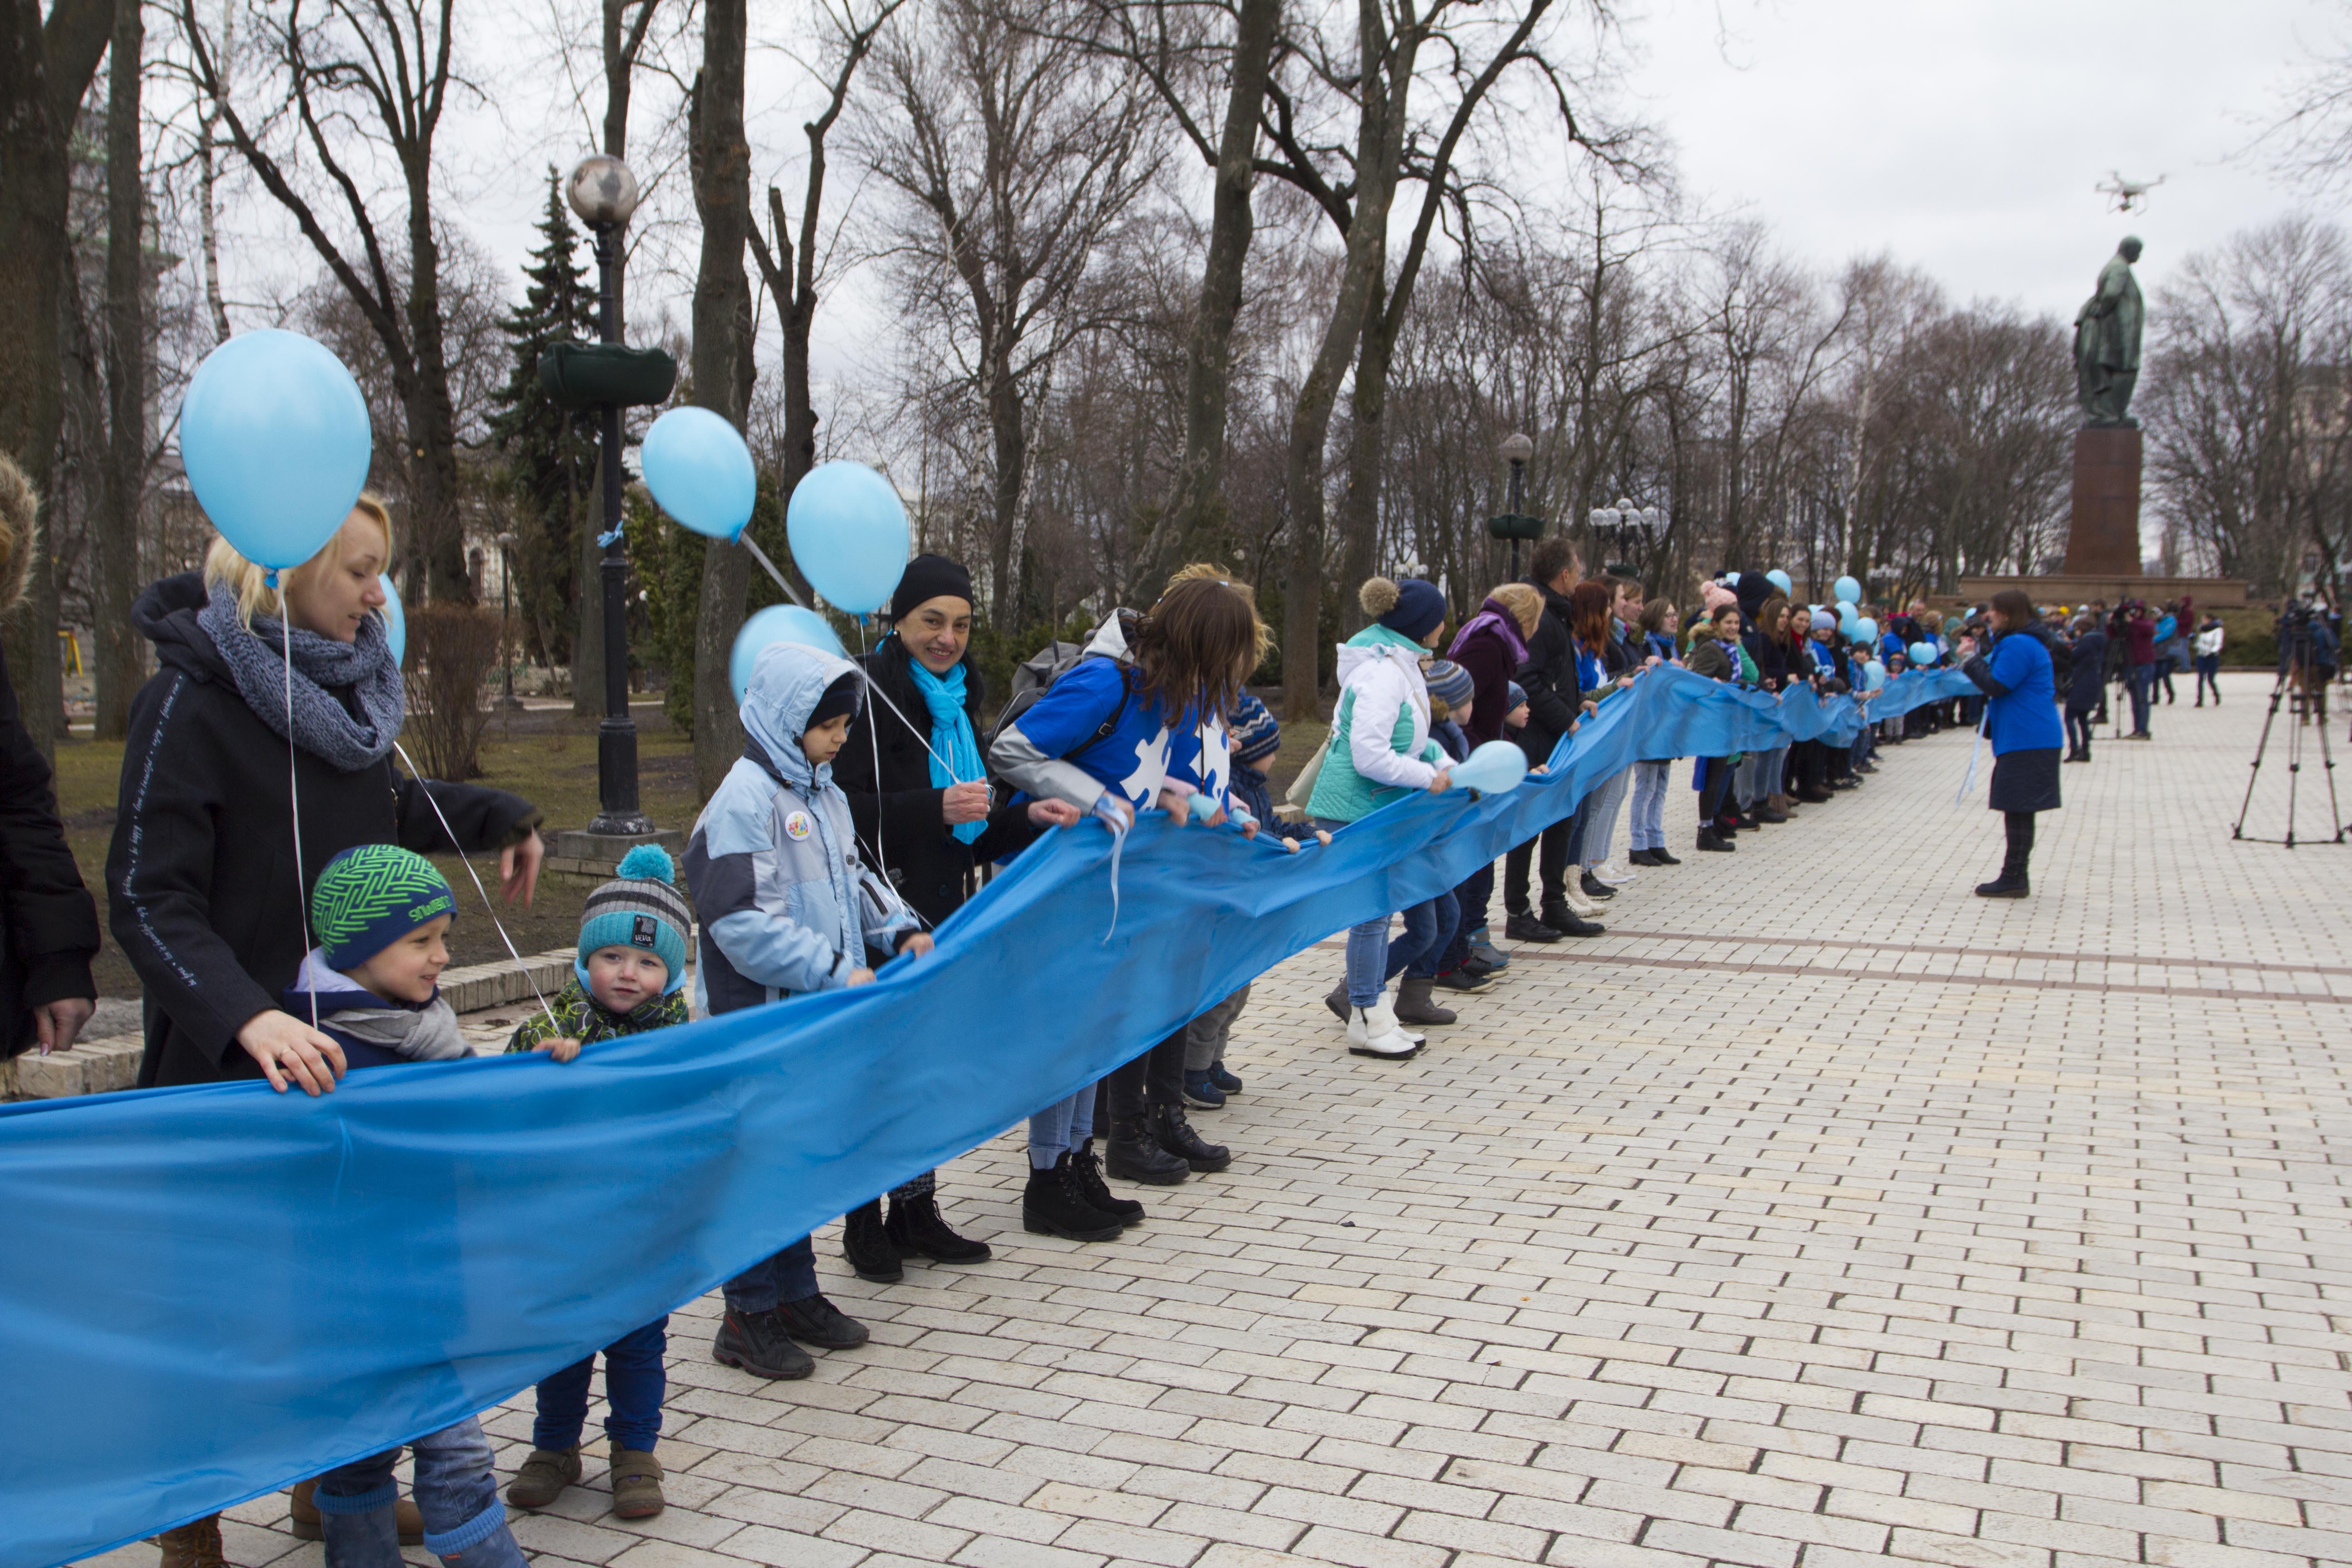 Жанна Бадоева, Наталья Водянова и киевские активисты: как прошел Всемирный день информирования об аутизме